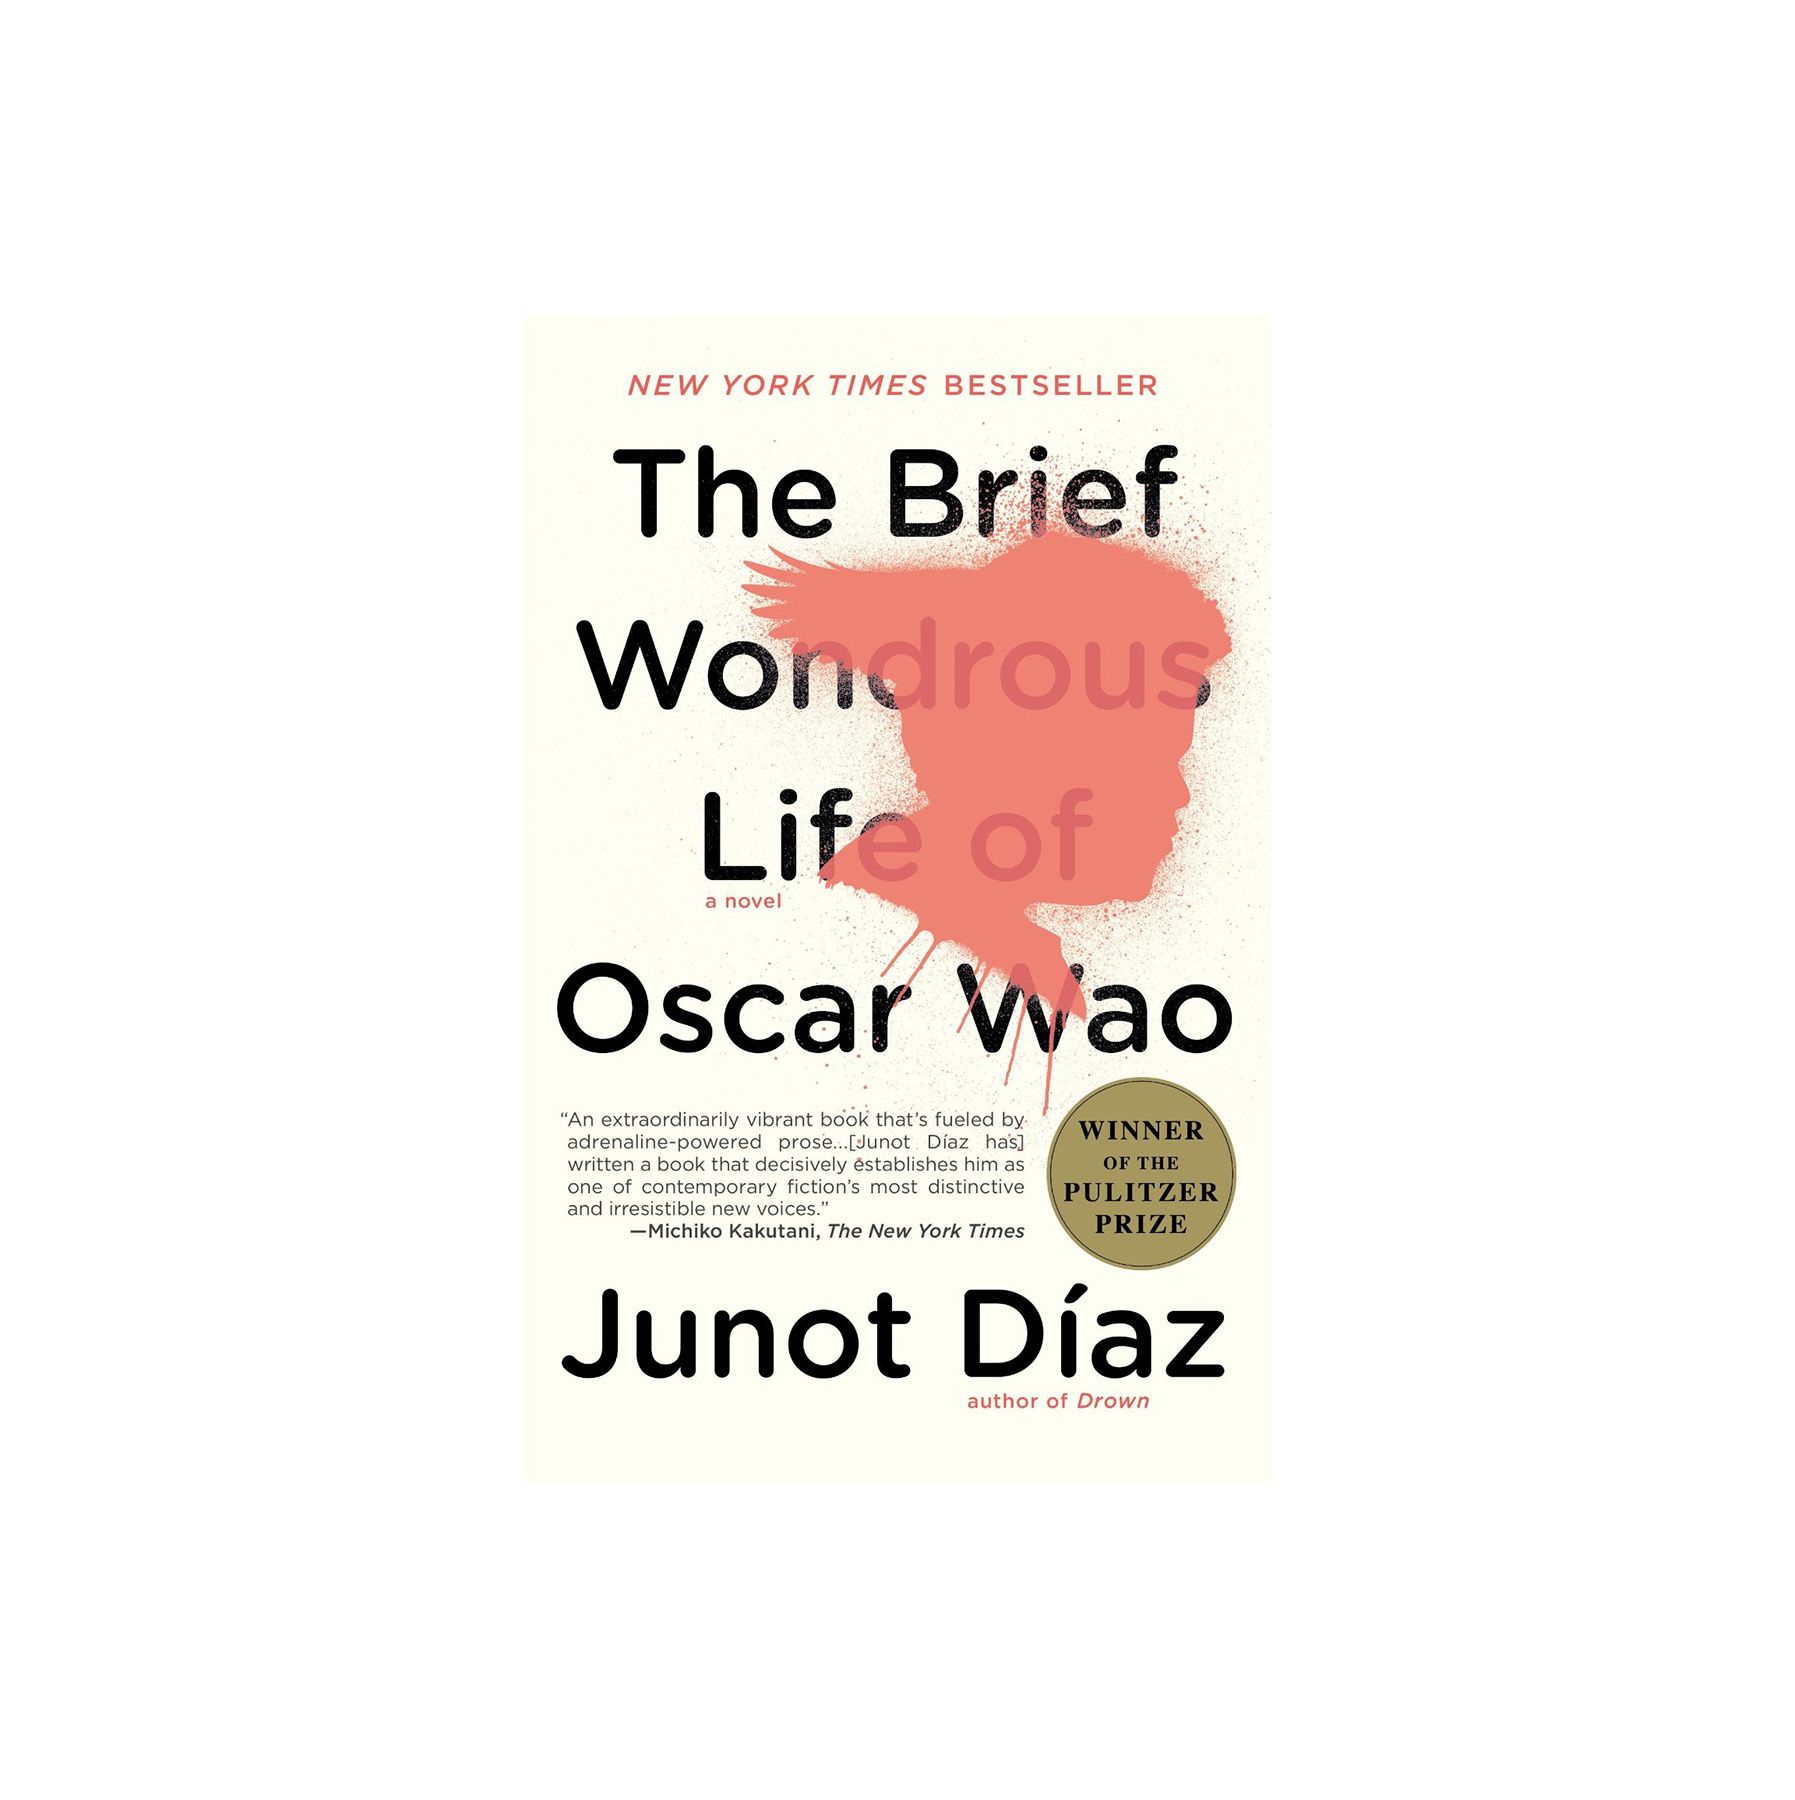 Scurtă viață minunată a lui Oscar Wao, de Junot Diaz